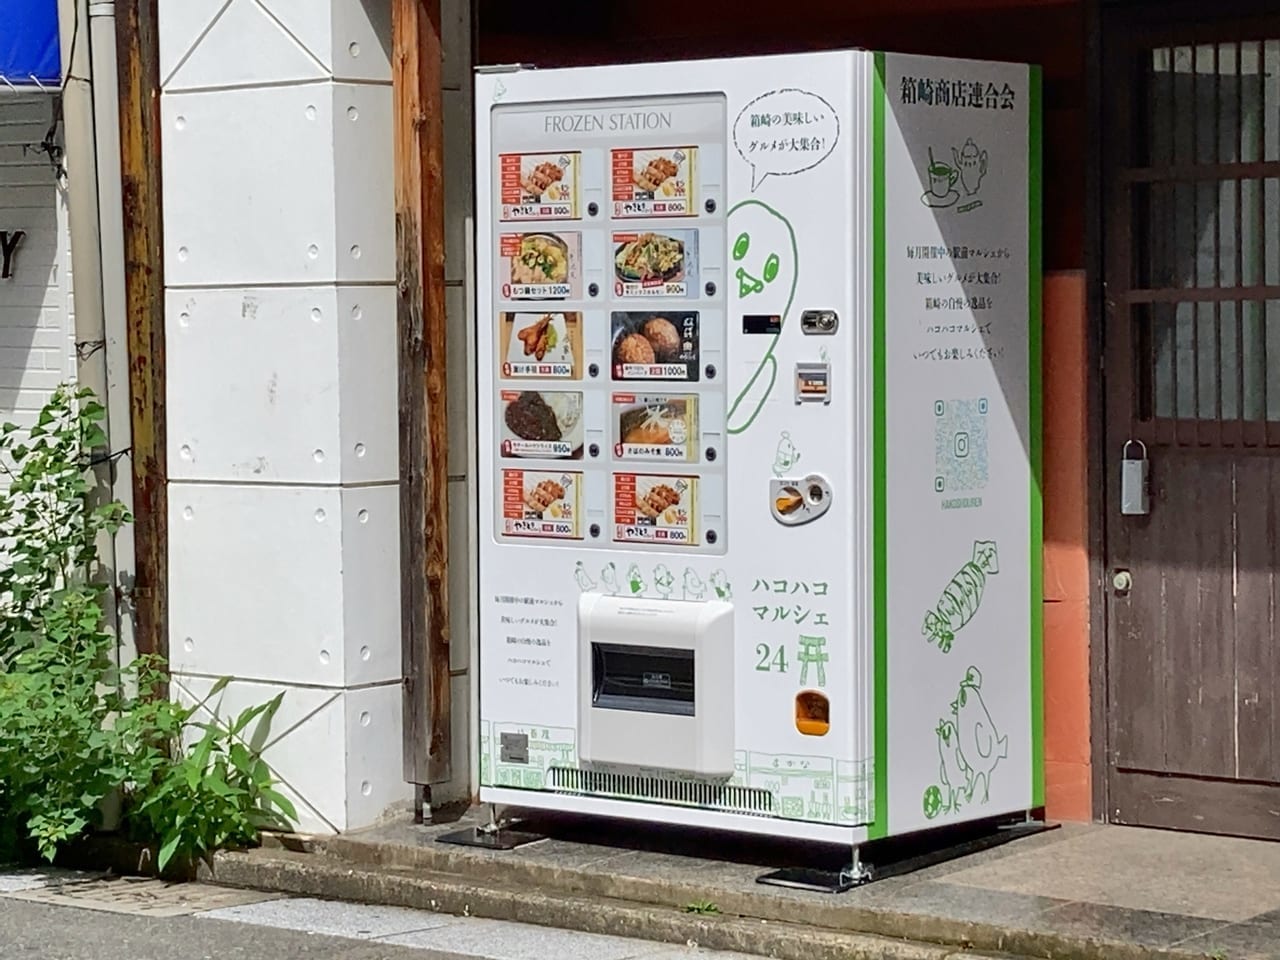 JR箱崎駅から徒歩で約3分の場所にある、箱崎連合会事務所前には、箱崎・筥松の美味しいお店が詰まった自販機「ハコハコマルシェ24」が、設置されています。